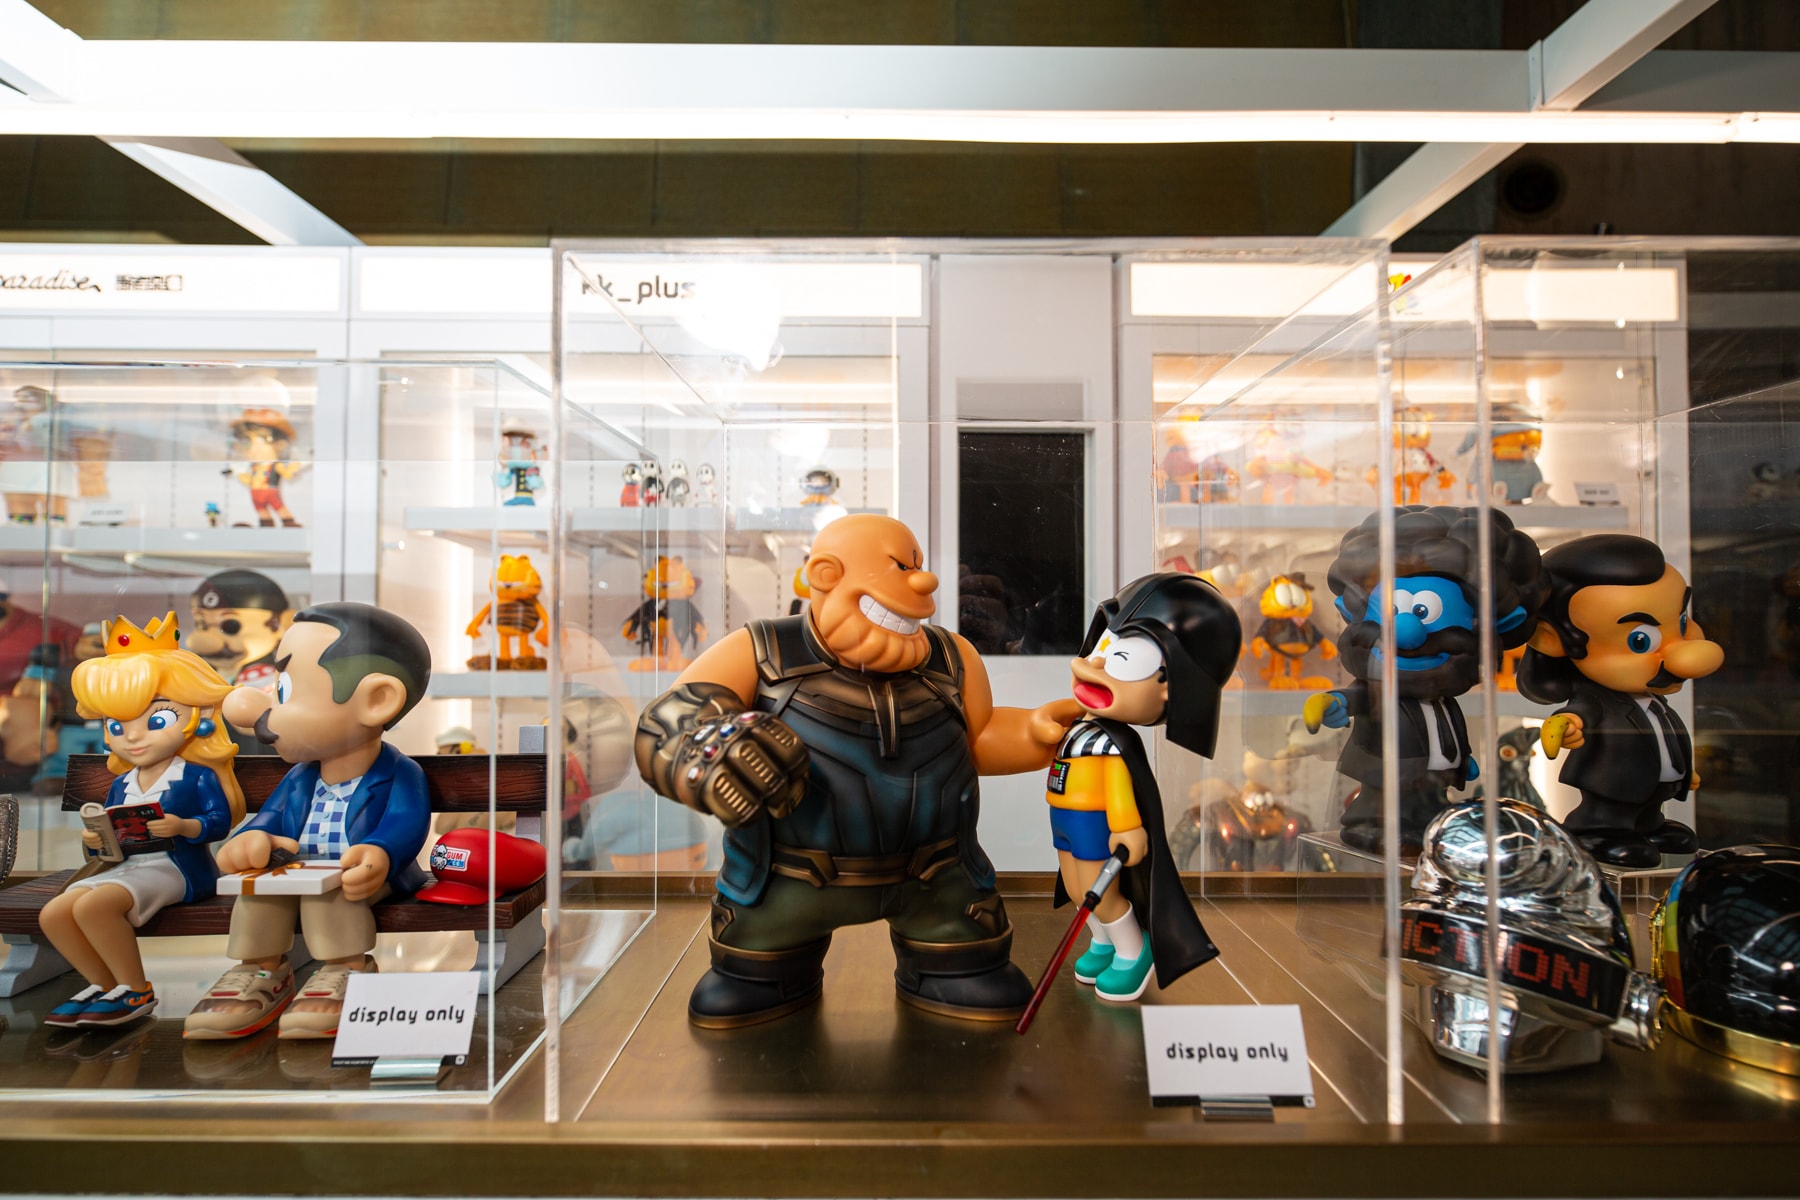 潮流玩具平台 kkplus 期間限定店正式登陸香港朗豪坊！